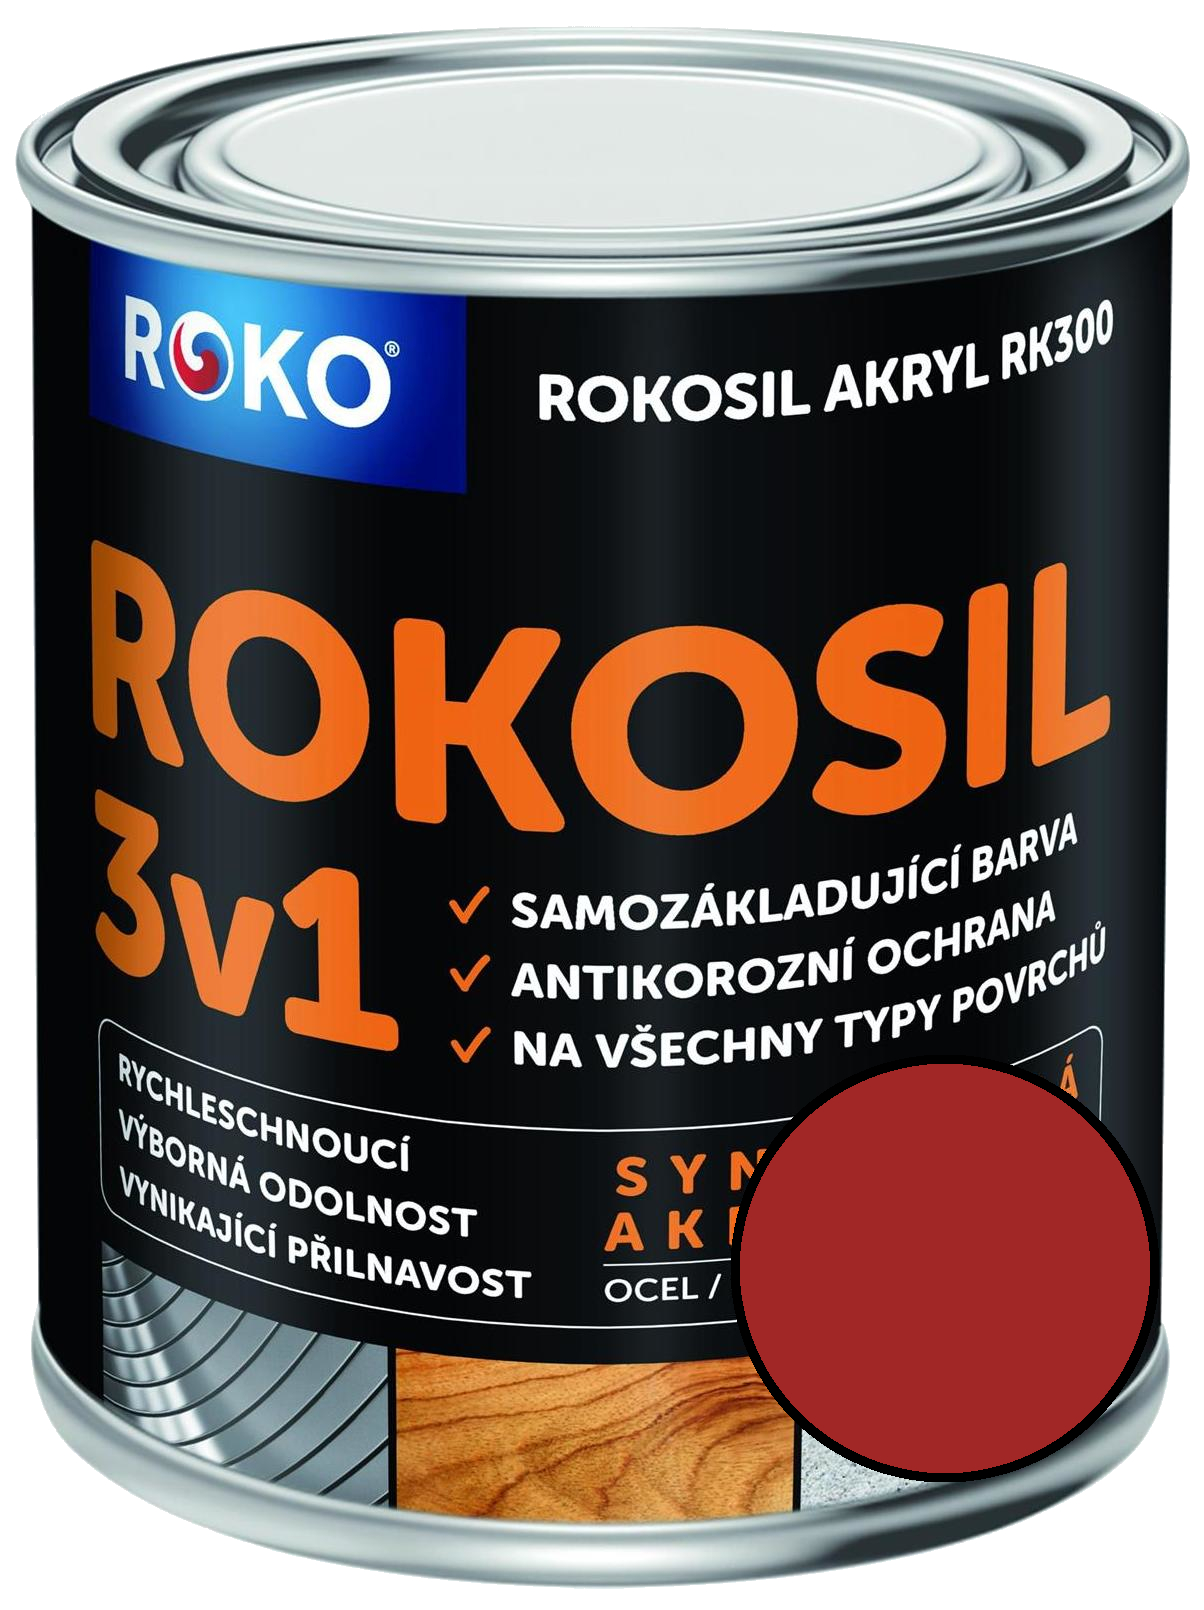 Barva samozákladující Rokosil akryl 3v1 RK 300 8190 červená tmavá, 0,6 l